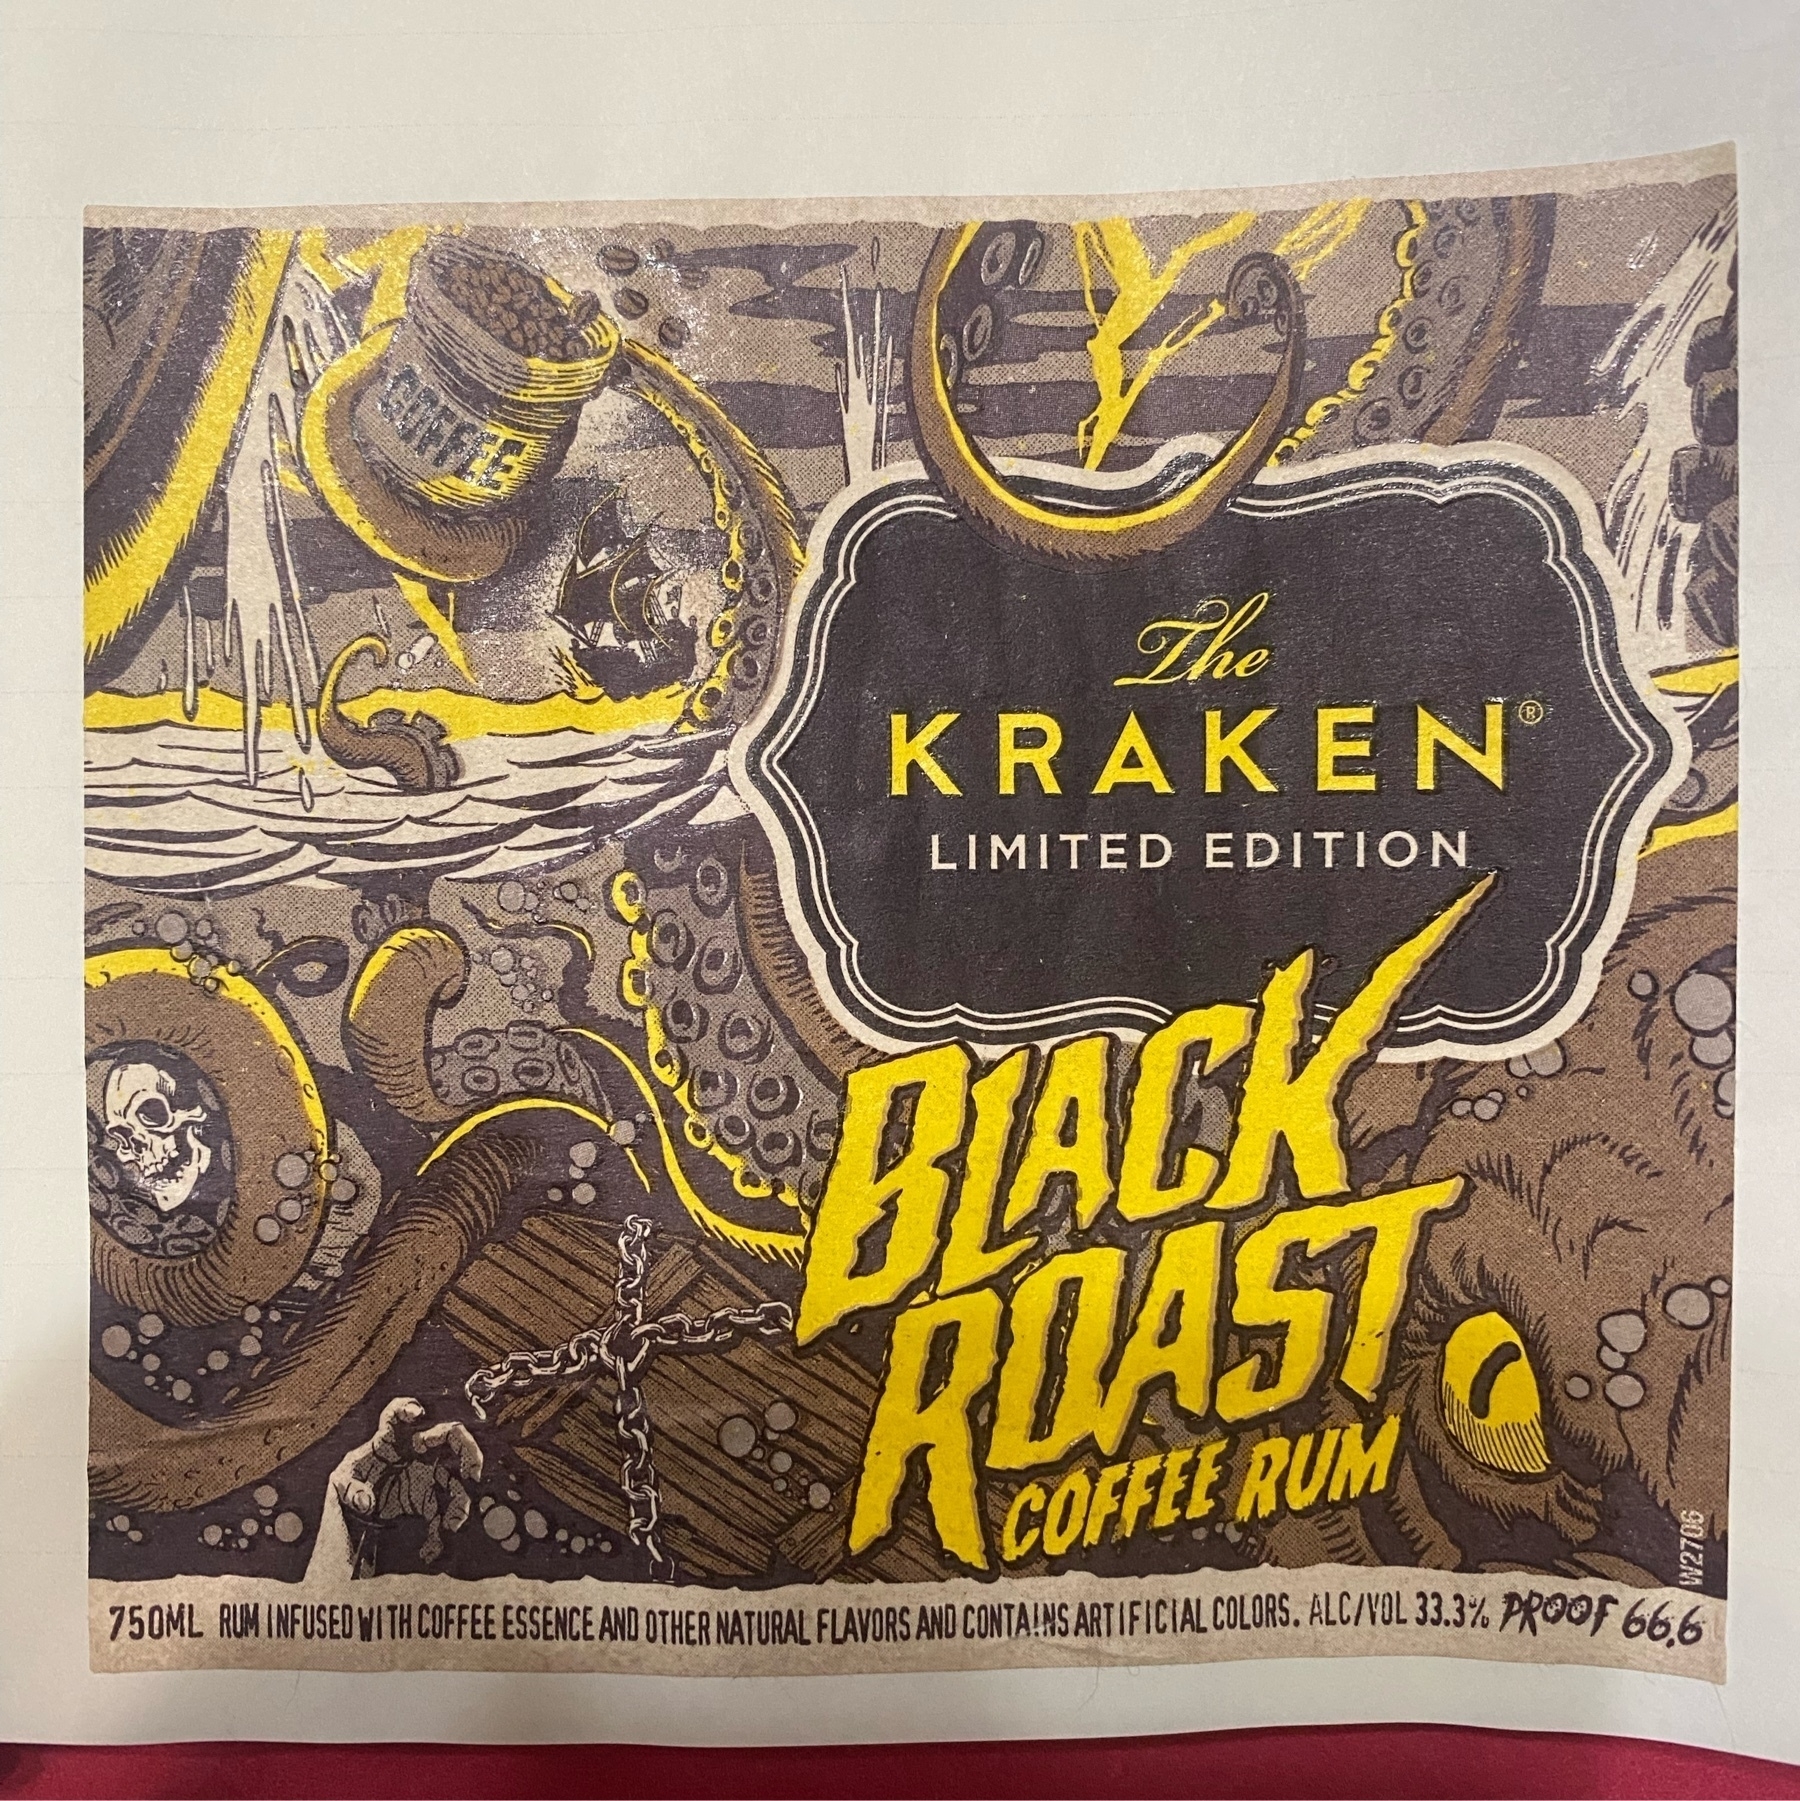 the bottle label from a bottle of Kraken Black Roast coffee rum.